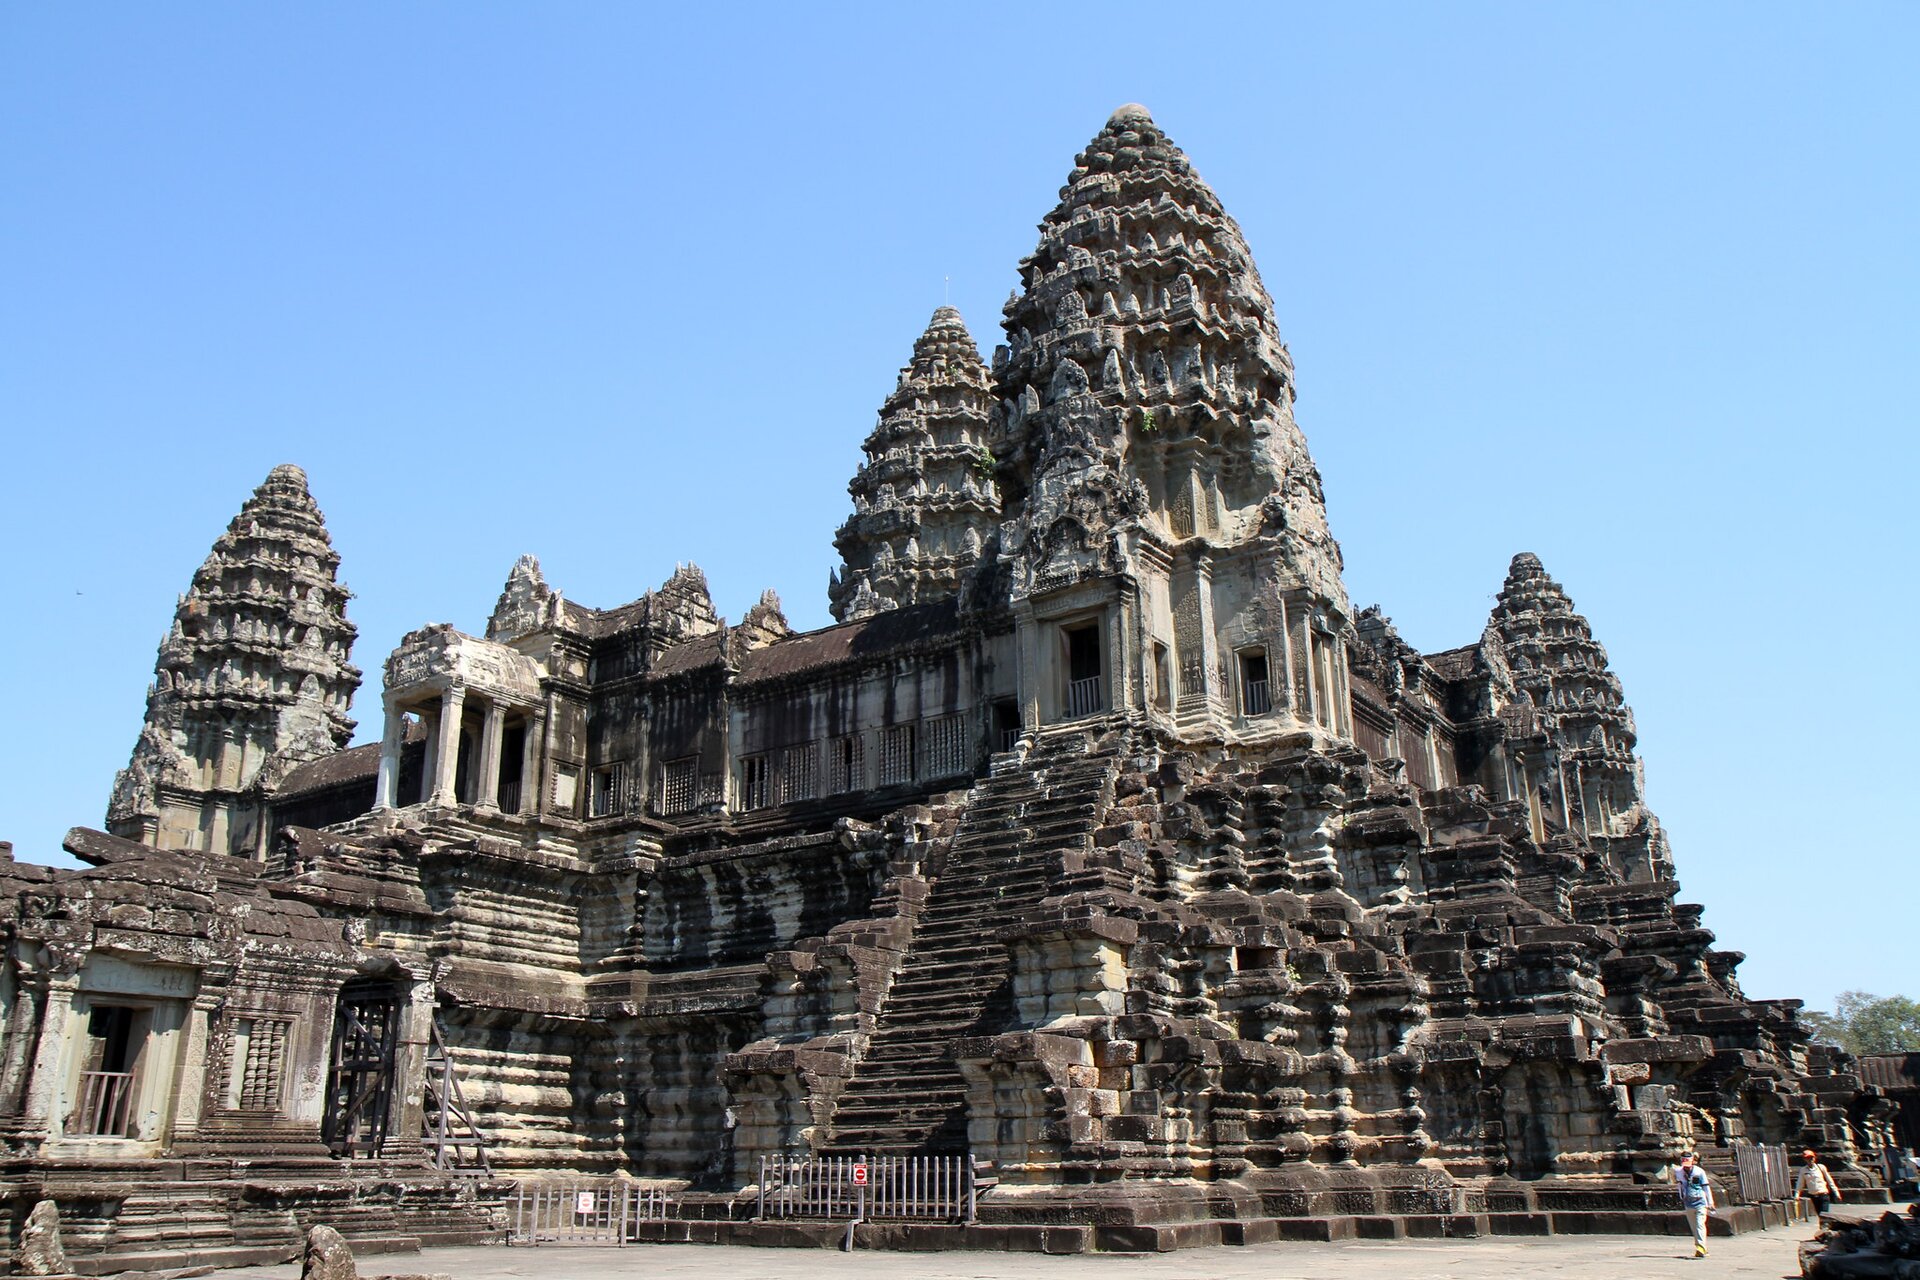 Zdjęcie przedstawia Angkor Wat w Kambodży. Jest ono największą świątynią buddyjską na świecie. Jest w całości zbudowane z kamienia. Ma okrągłe wysokie kopuły oraz schody. Widać ludzi spacerujących przed świątynią.